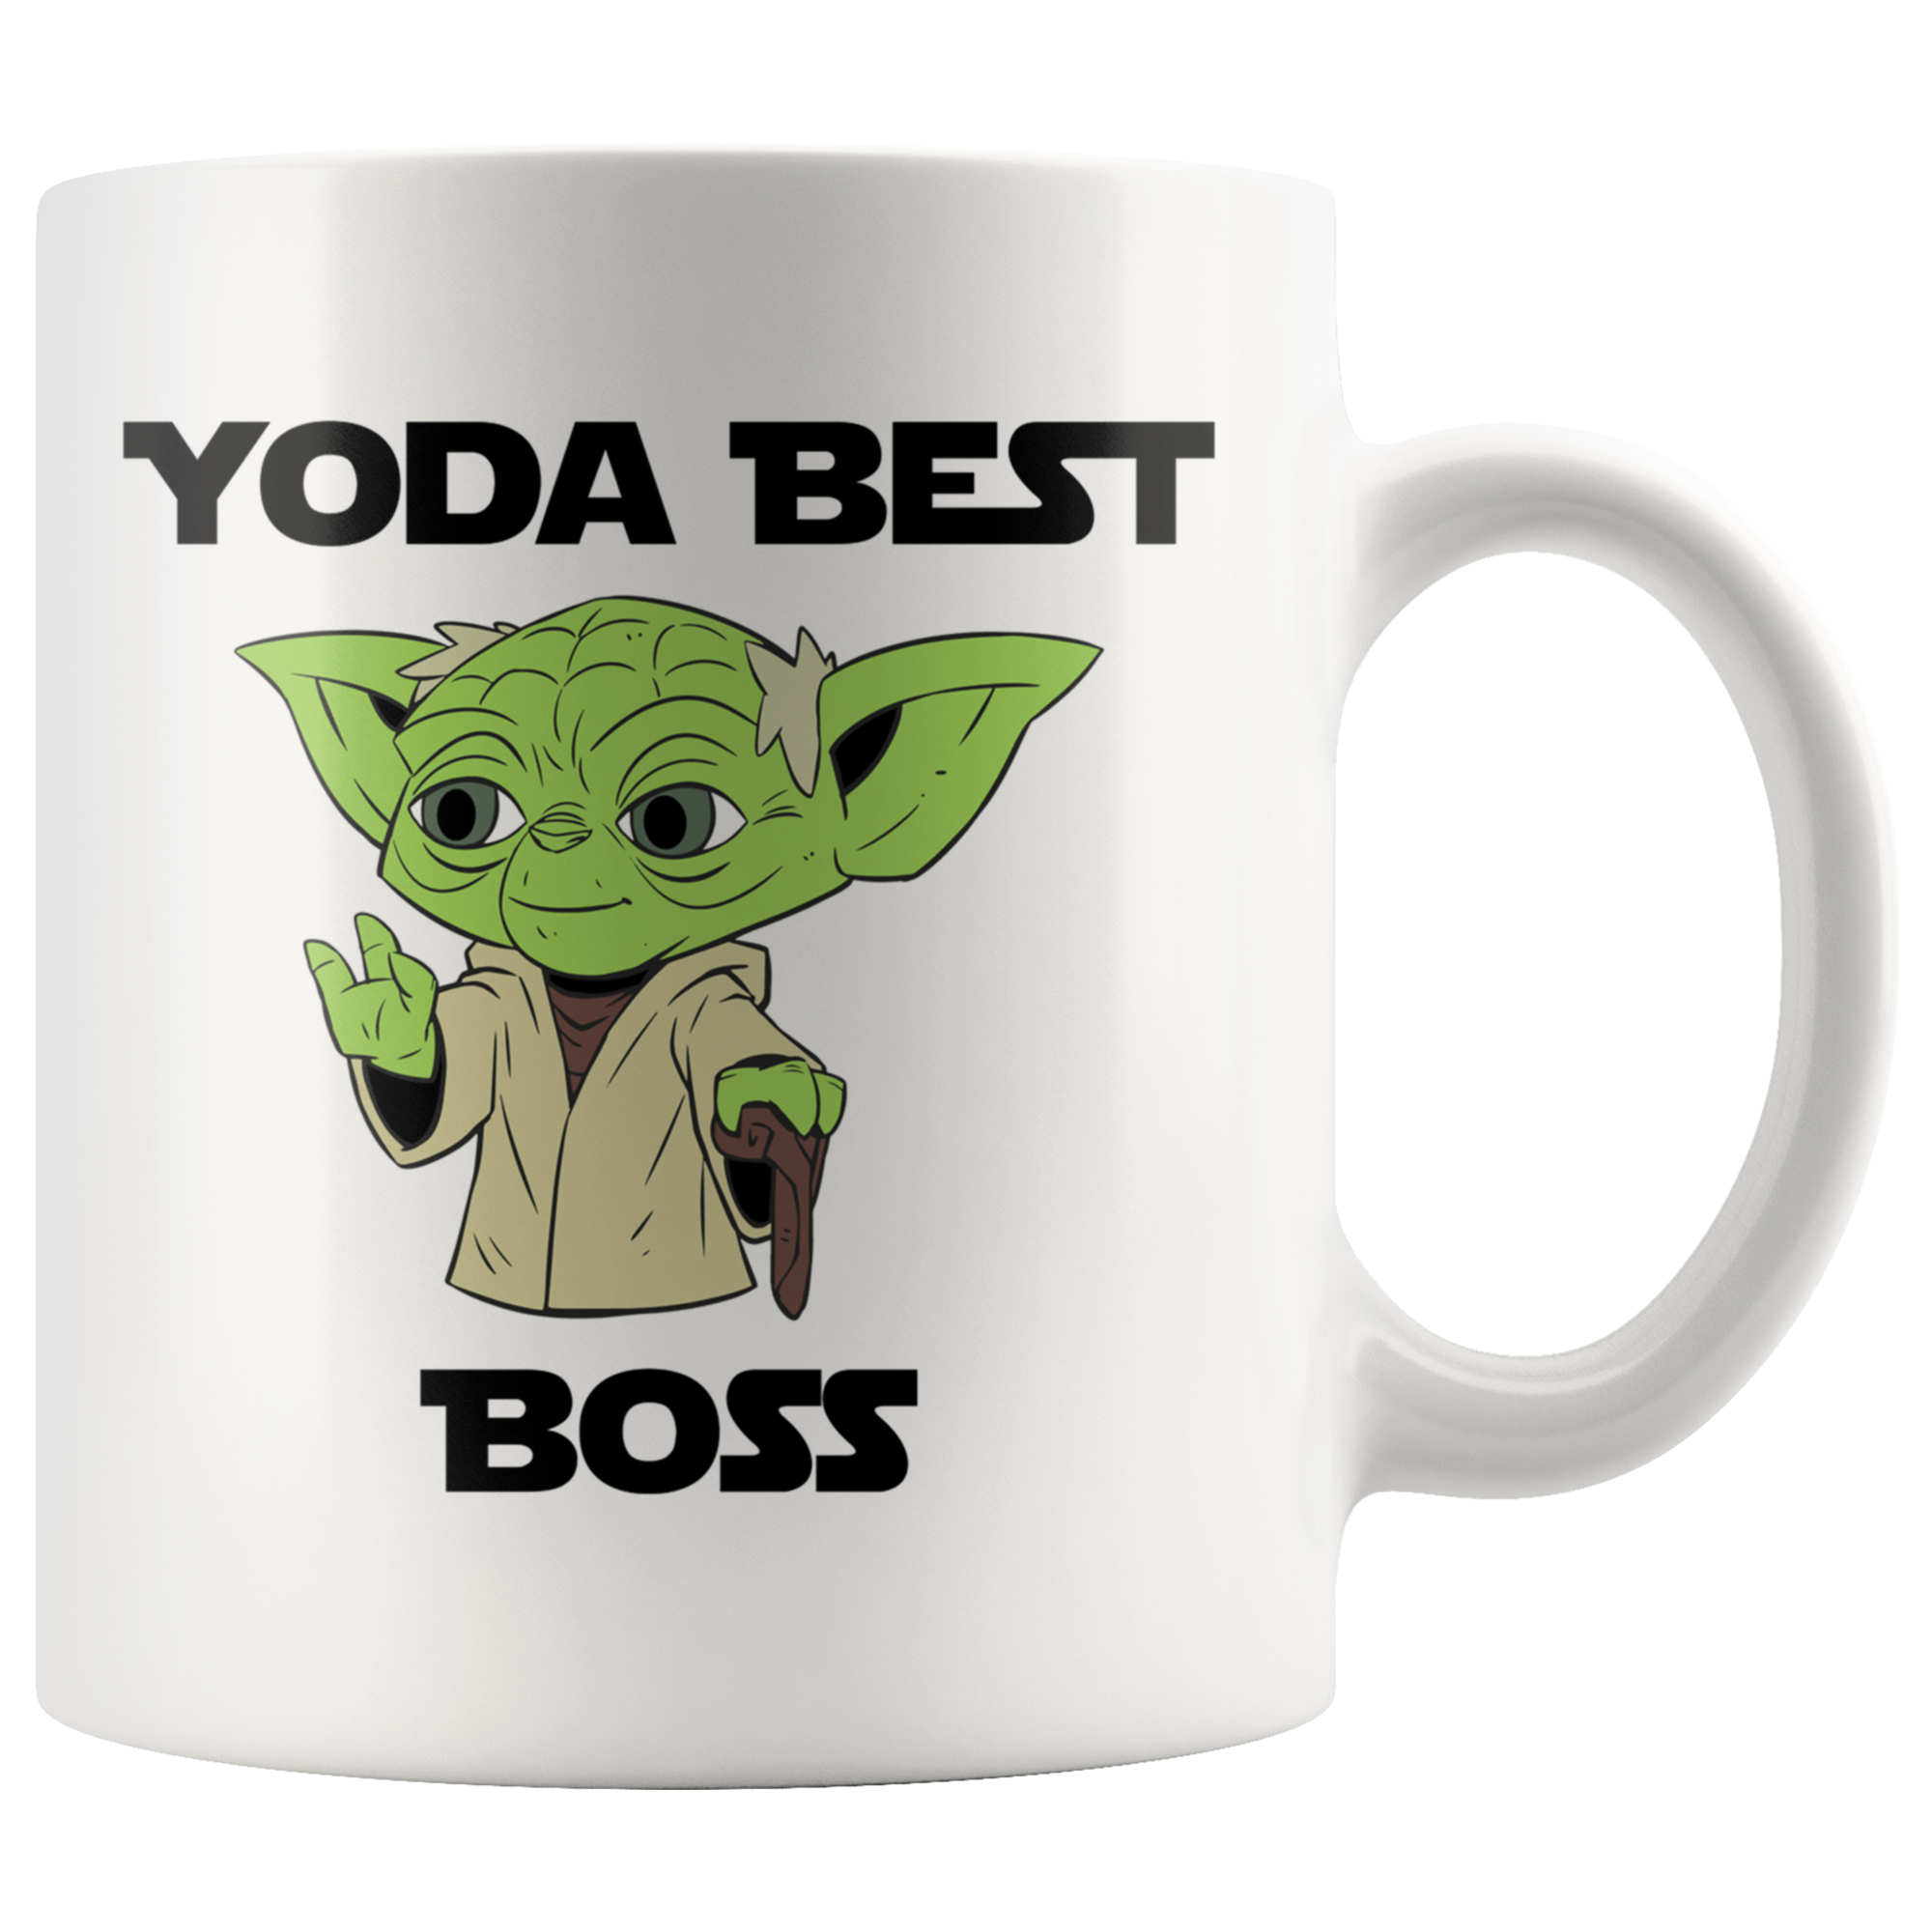 Yoda Best Boss 11oz Coffee Mug - TL